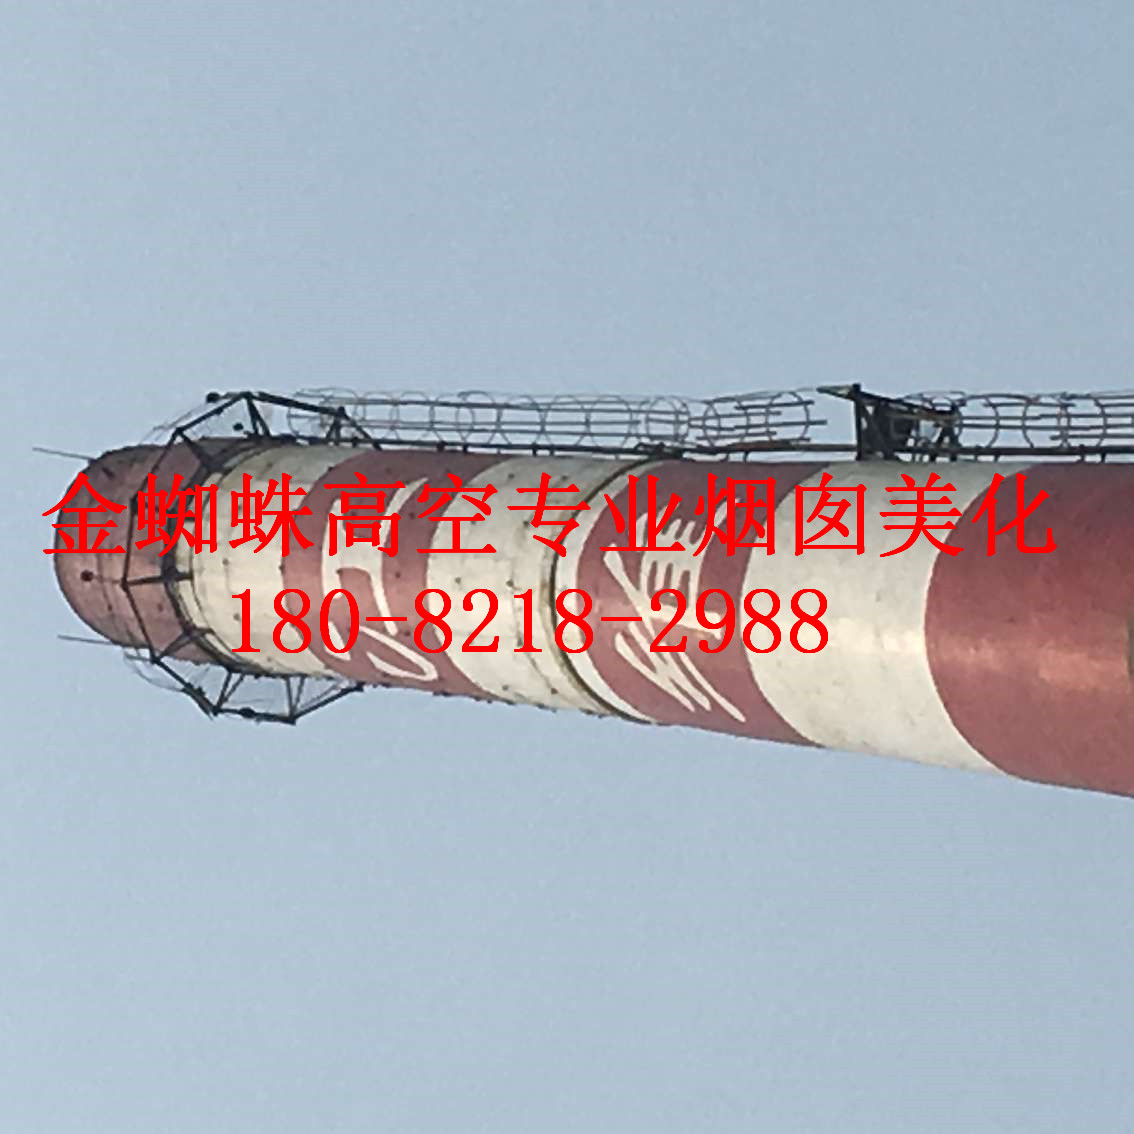 鹰潭市烟囱航标漆公司卓越品牌